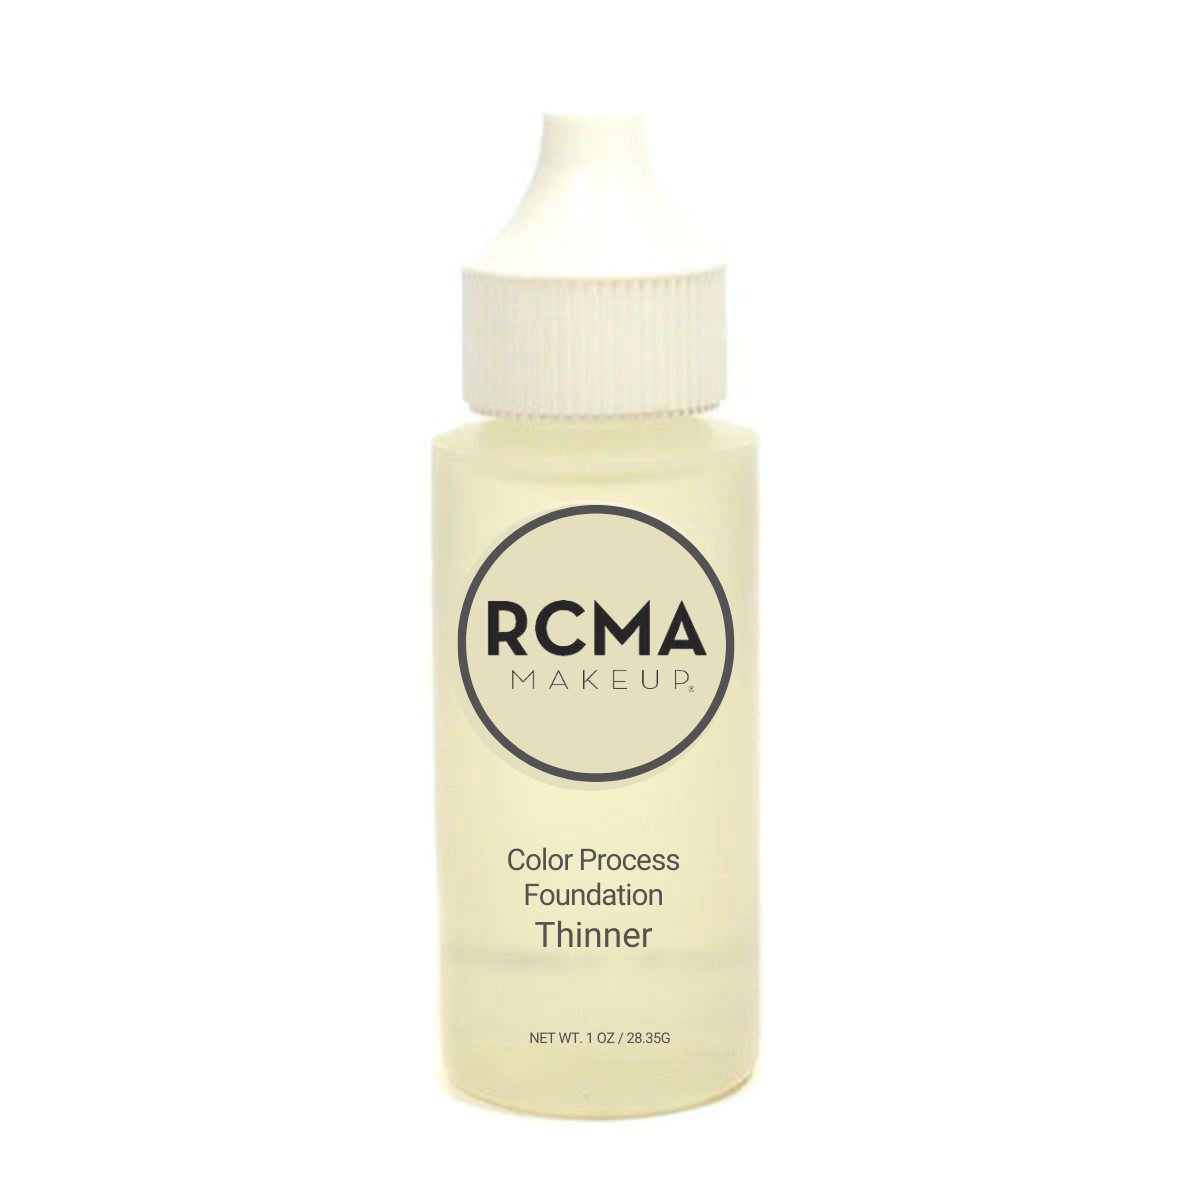 RCMA Thinner